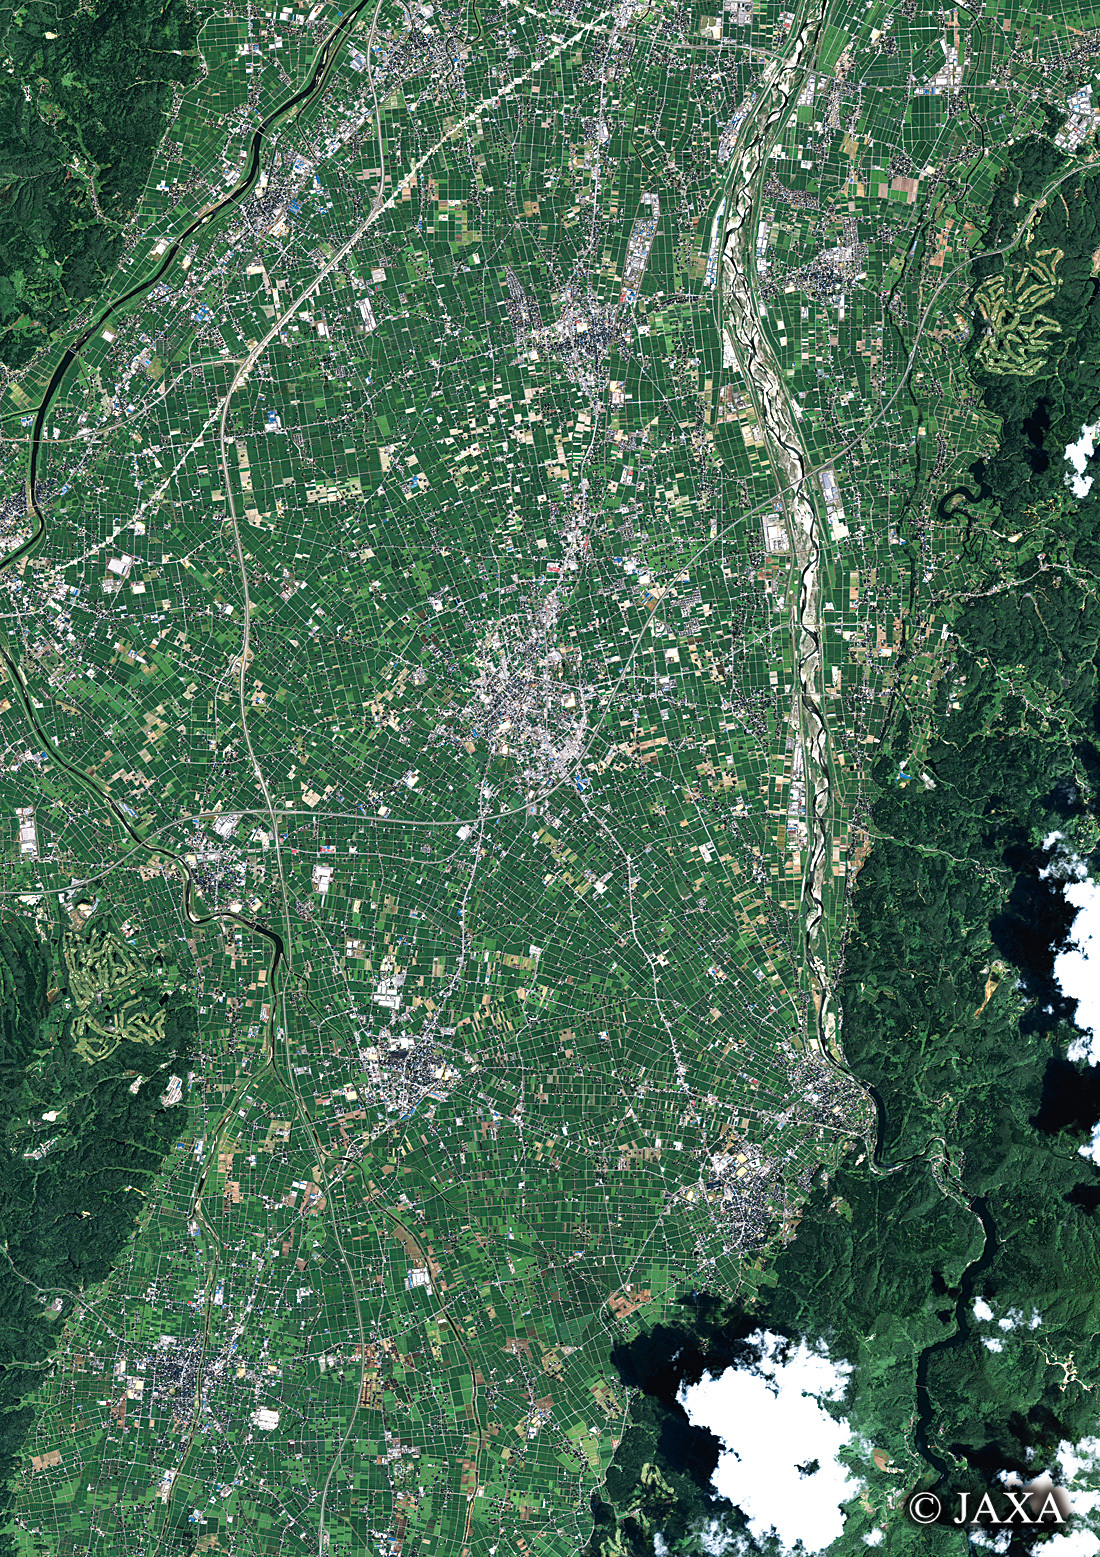 だいちから見た日本の都市 砺波市:衛星画像